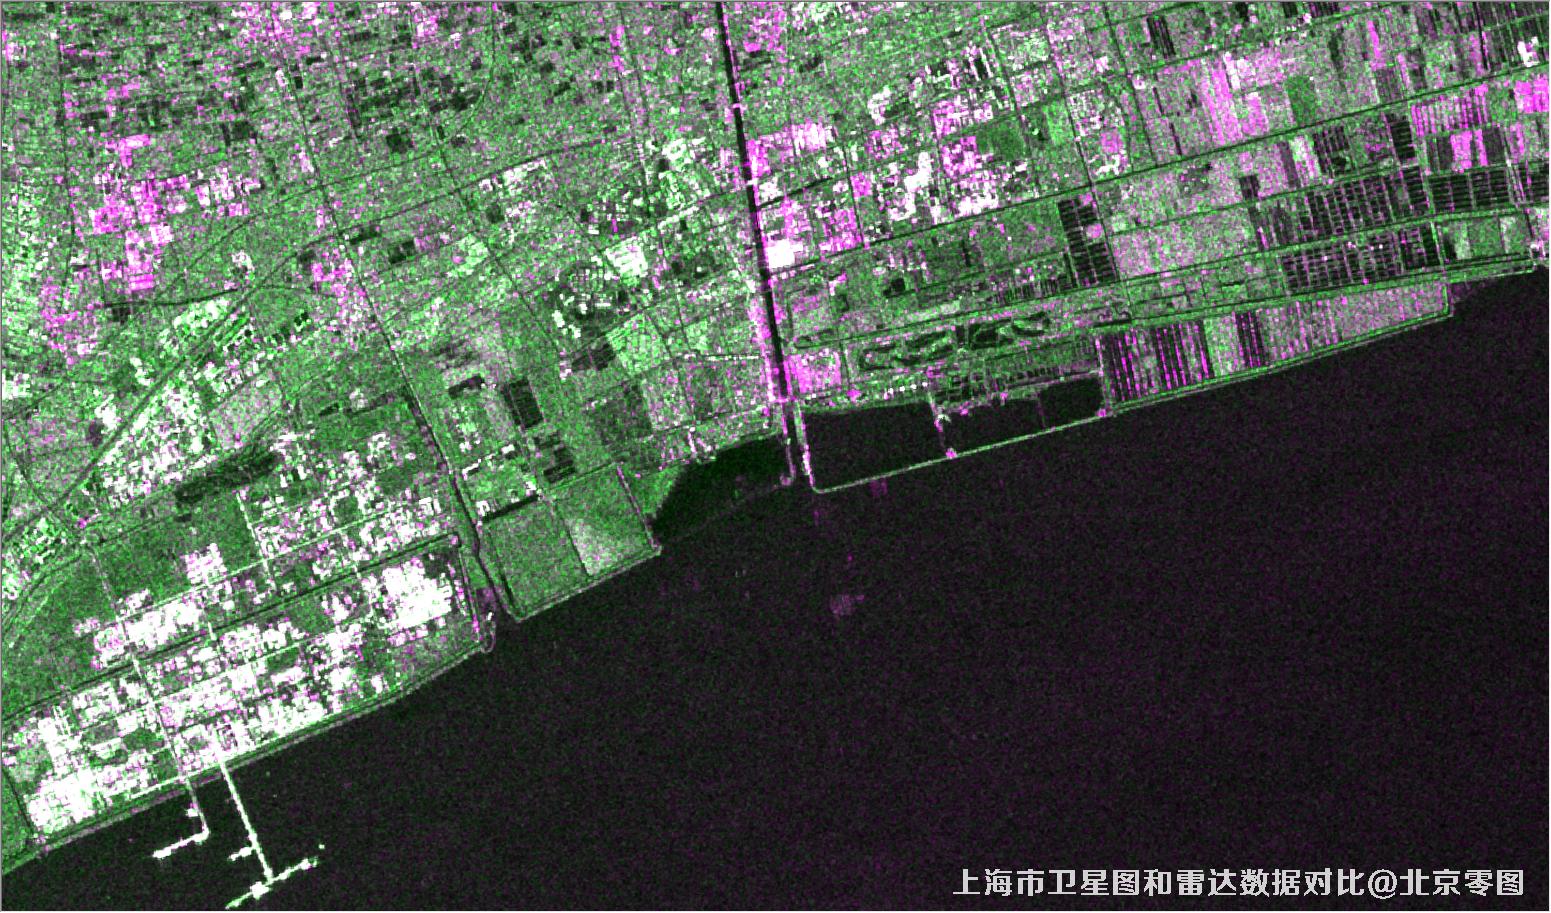 上海市卫星图和雷达数据对比